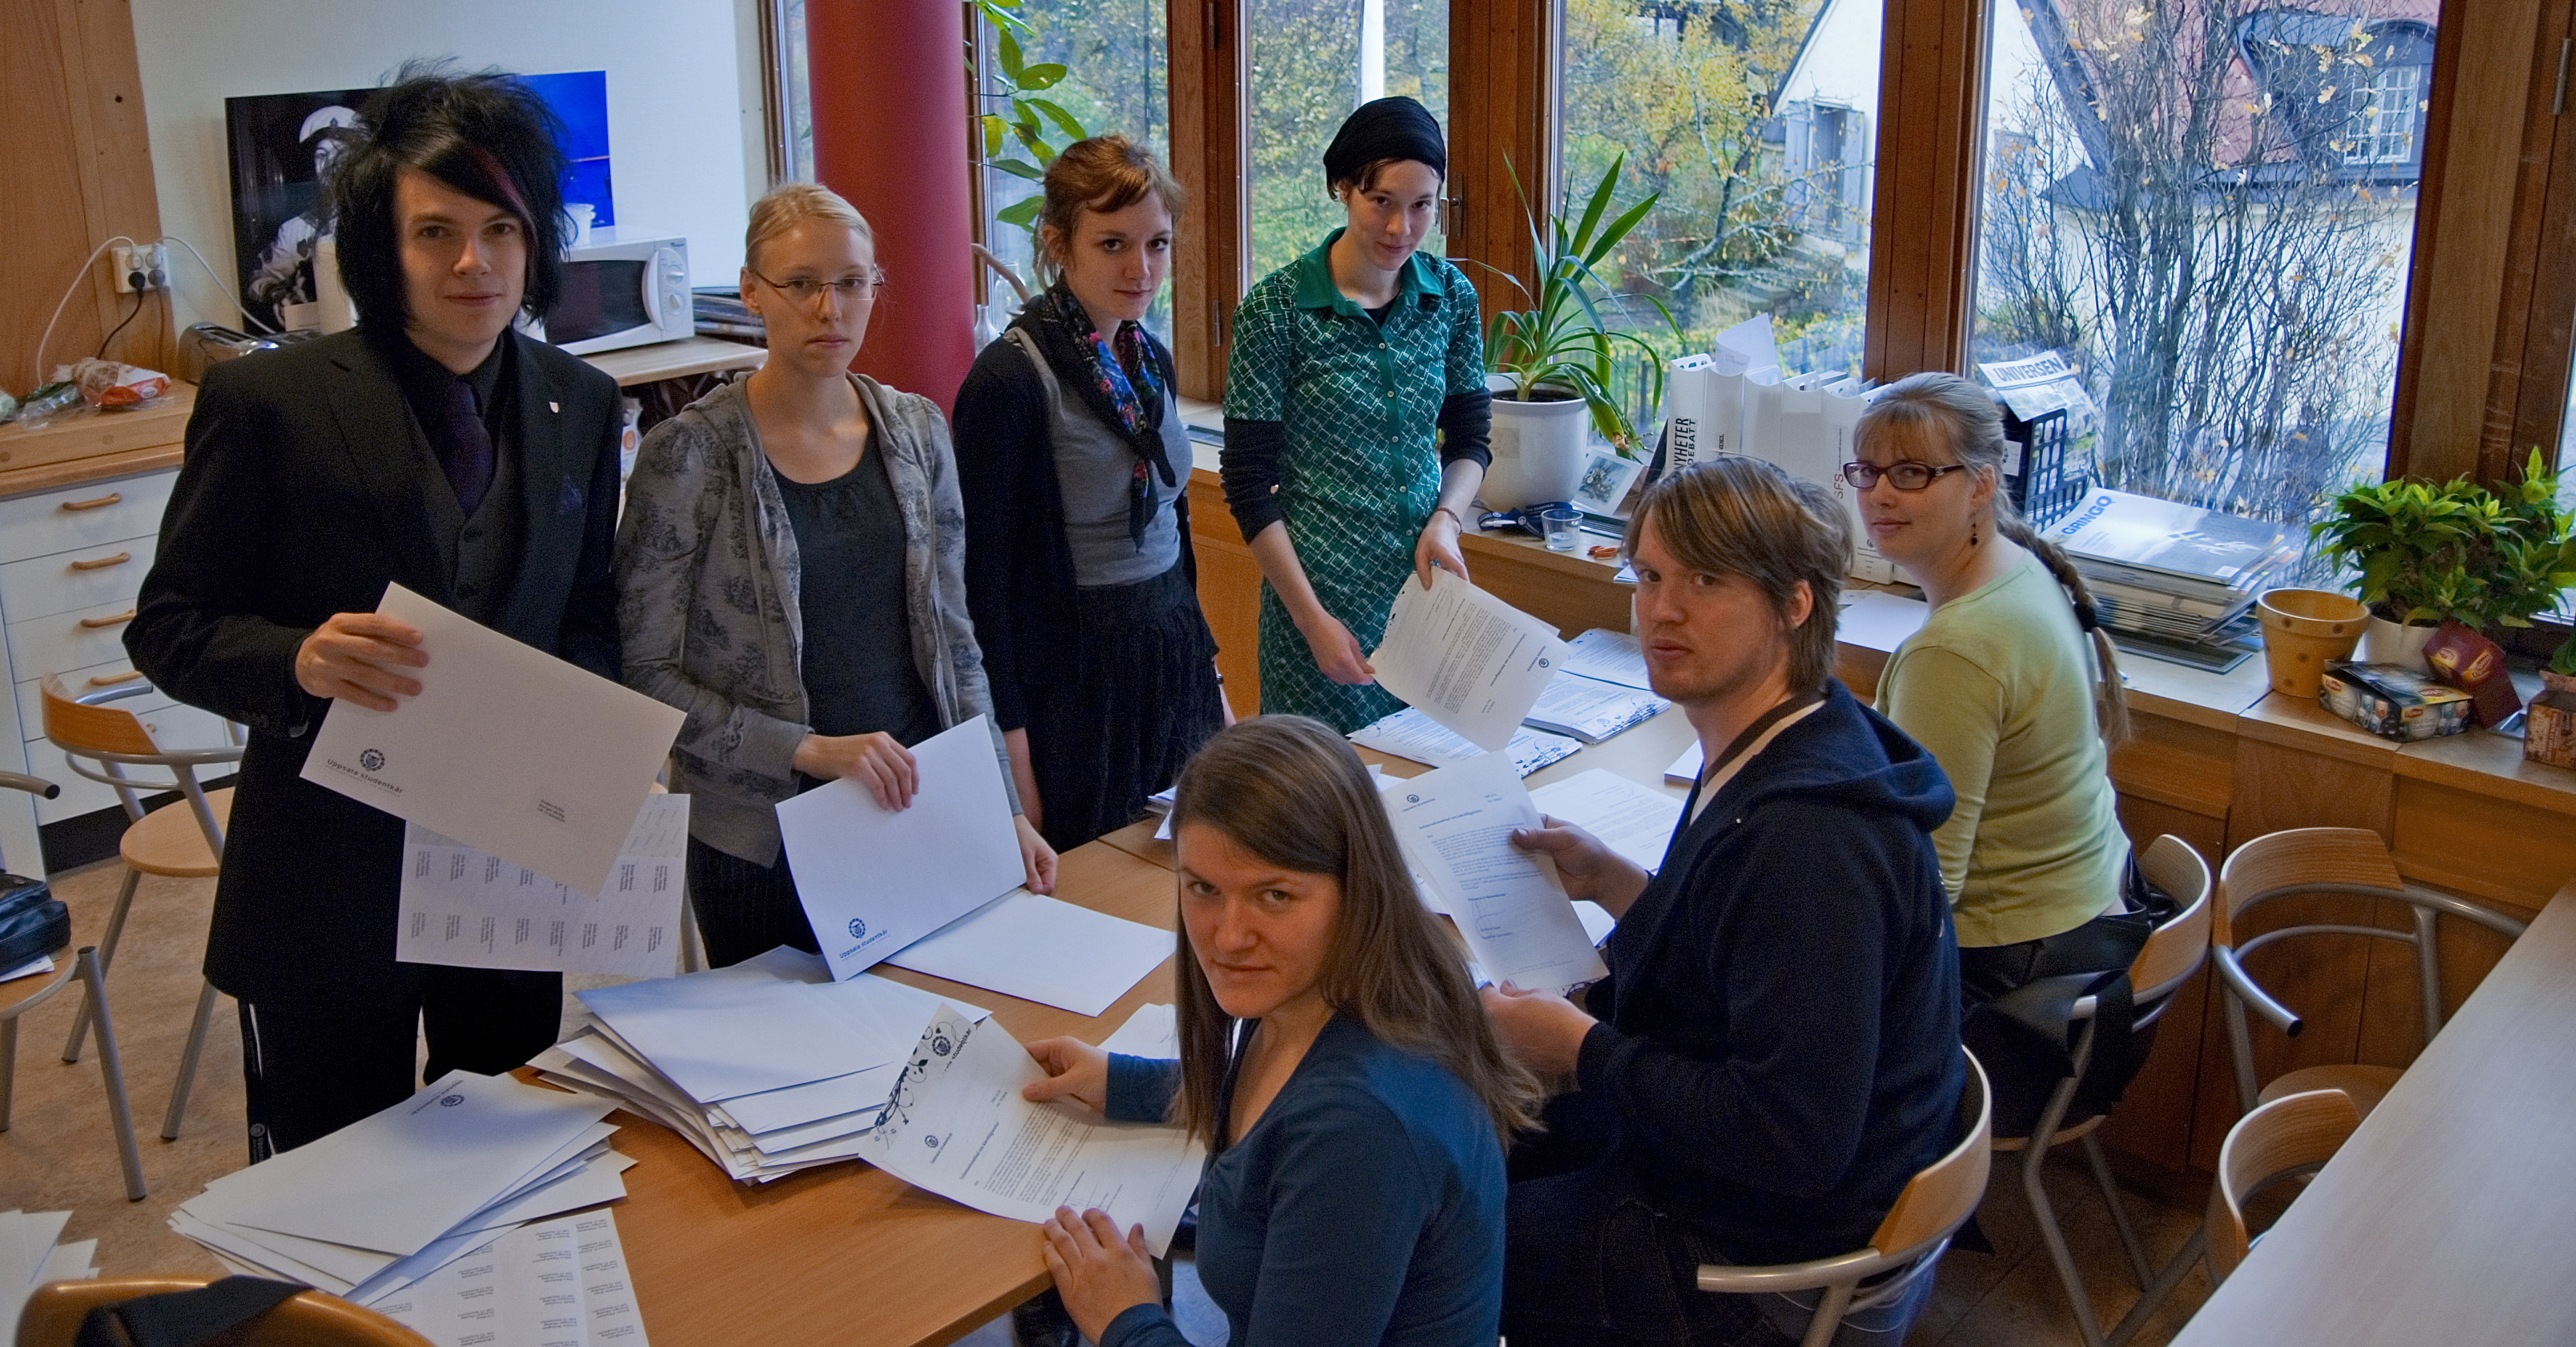 Här förbereder Uppsalas studentkår ett utskick med information angående avskaffandet av kårobligatoriet.